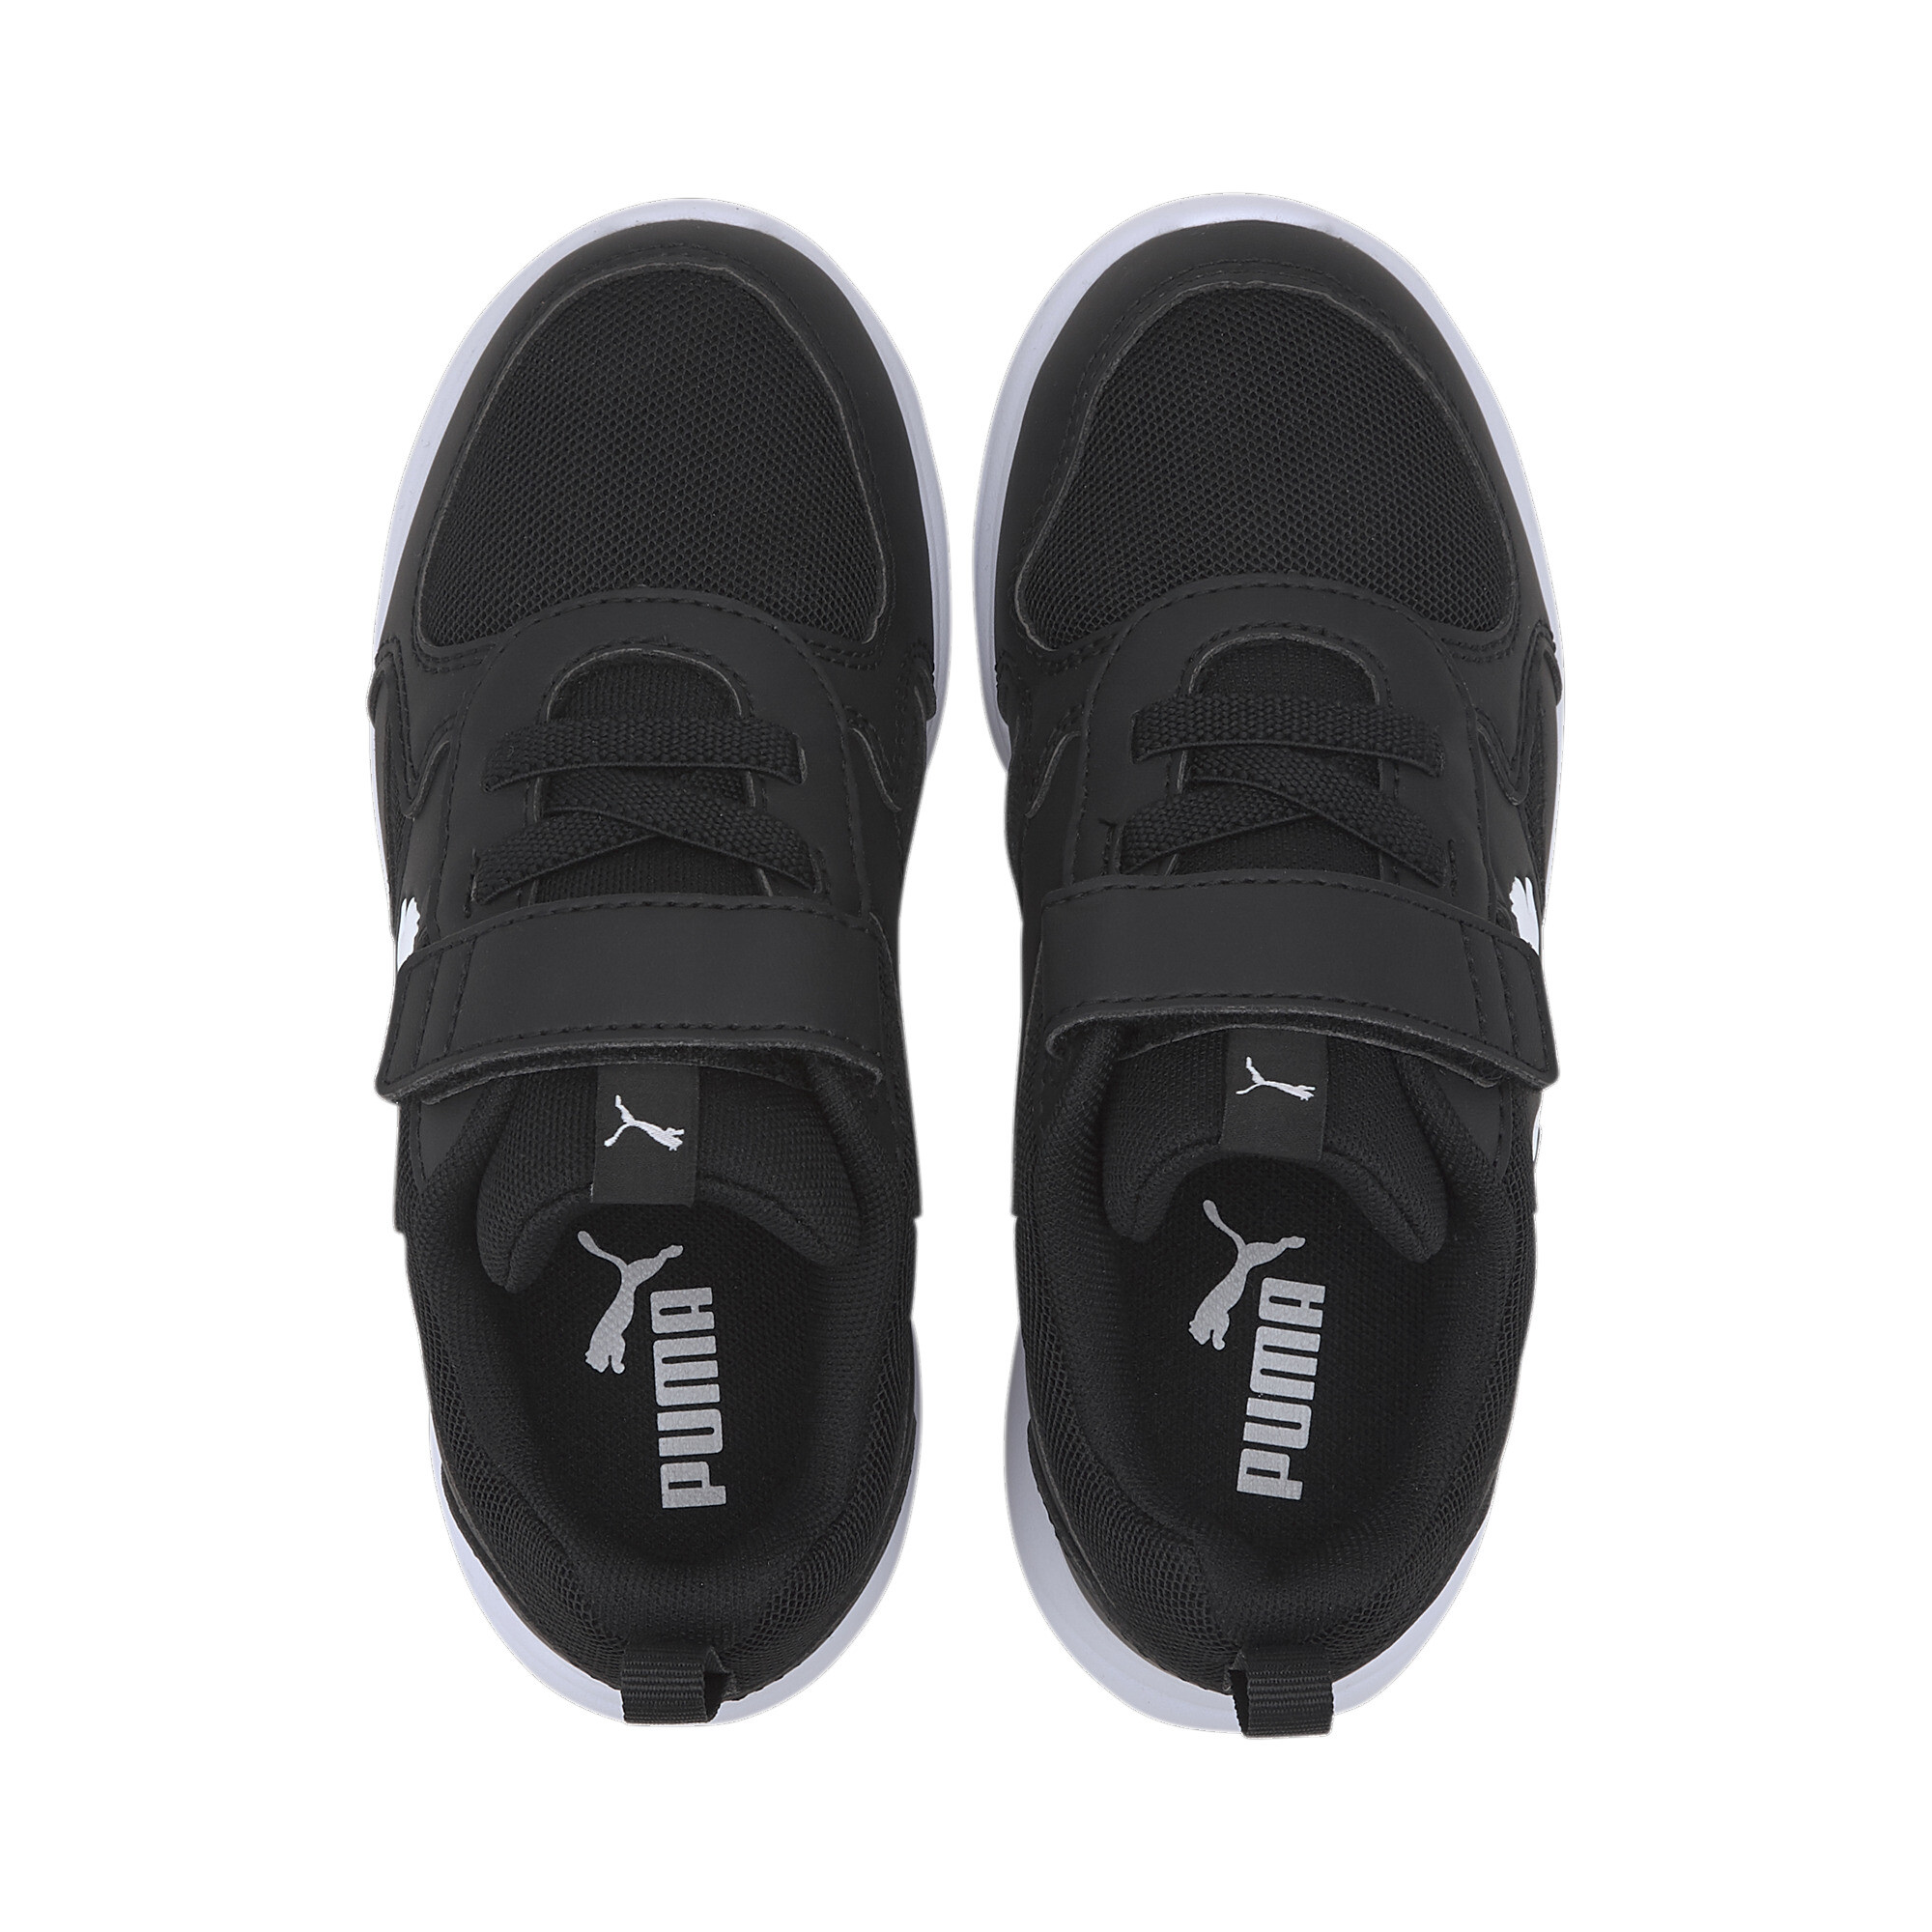 Kids' PUMA Fun Racer Sneakers In Black, Size EU 31.5